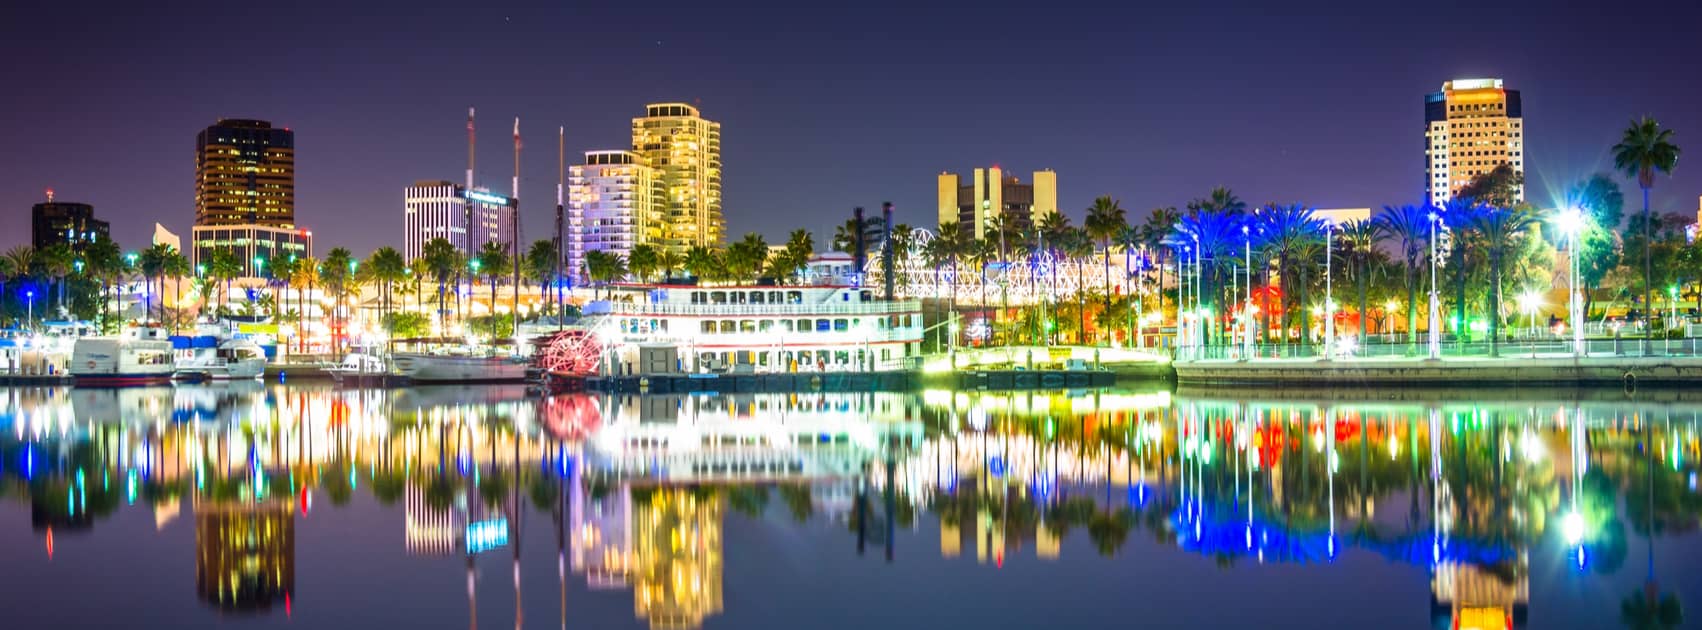 Long Beach Real Estate at Night